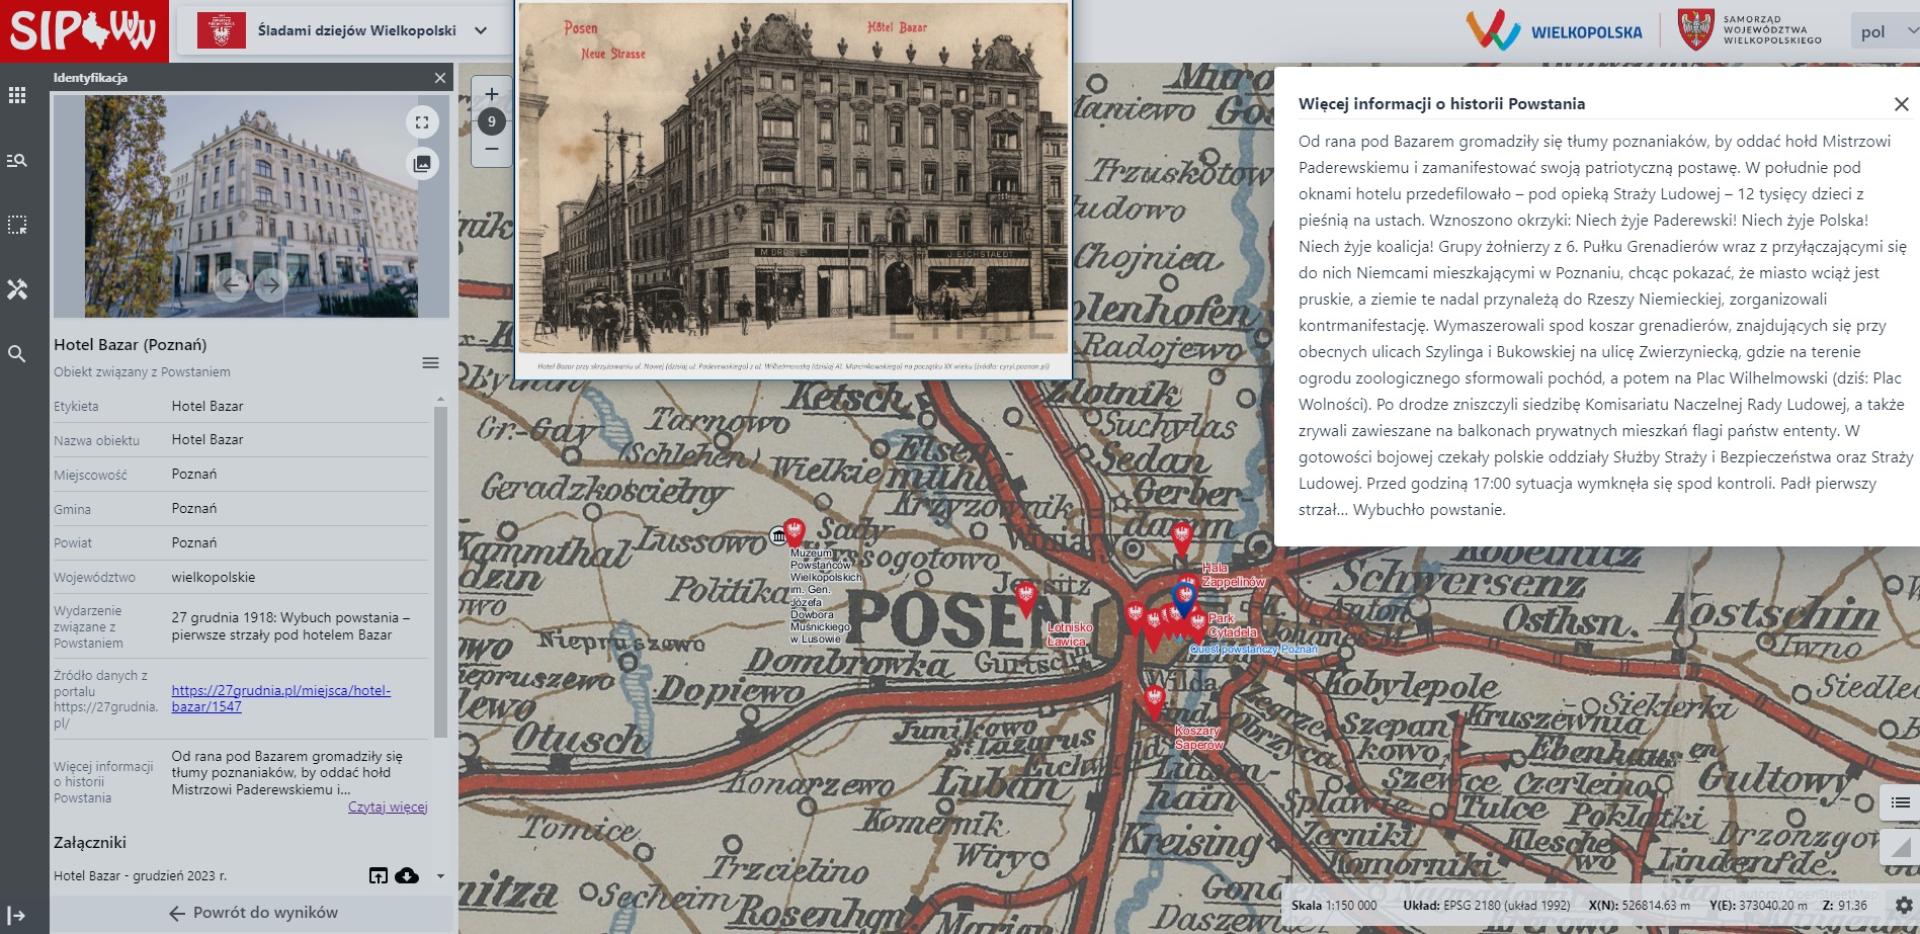 Przestrzenna mapa ,,Śladami dziejów Wielkopolski” nagrodzona!  - zobacz więcej